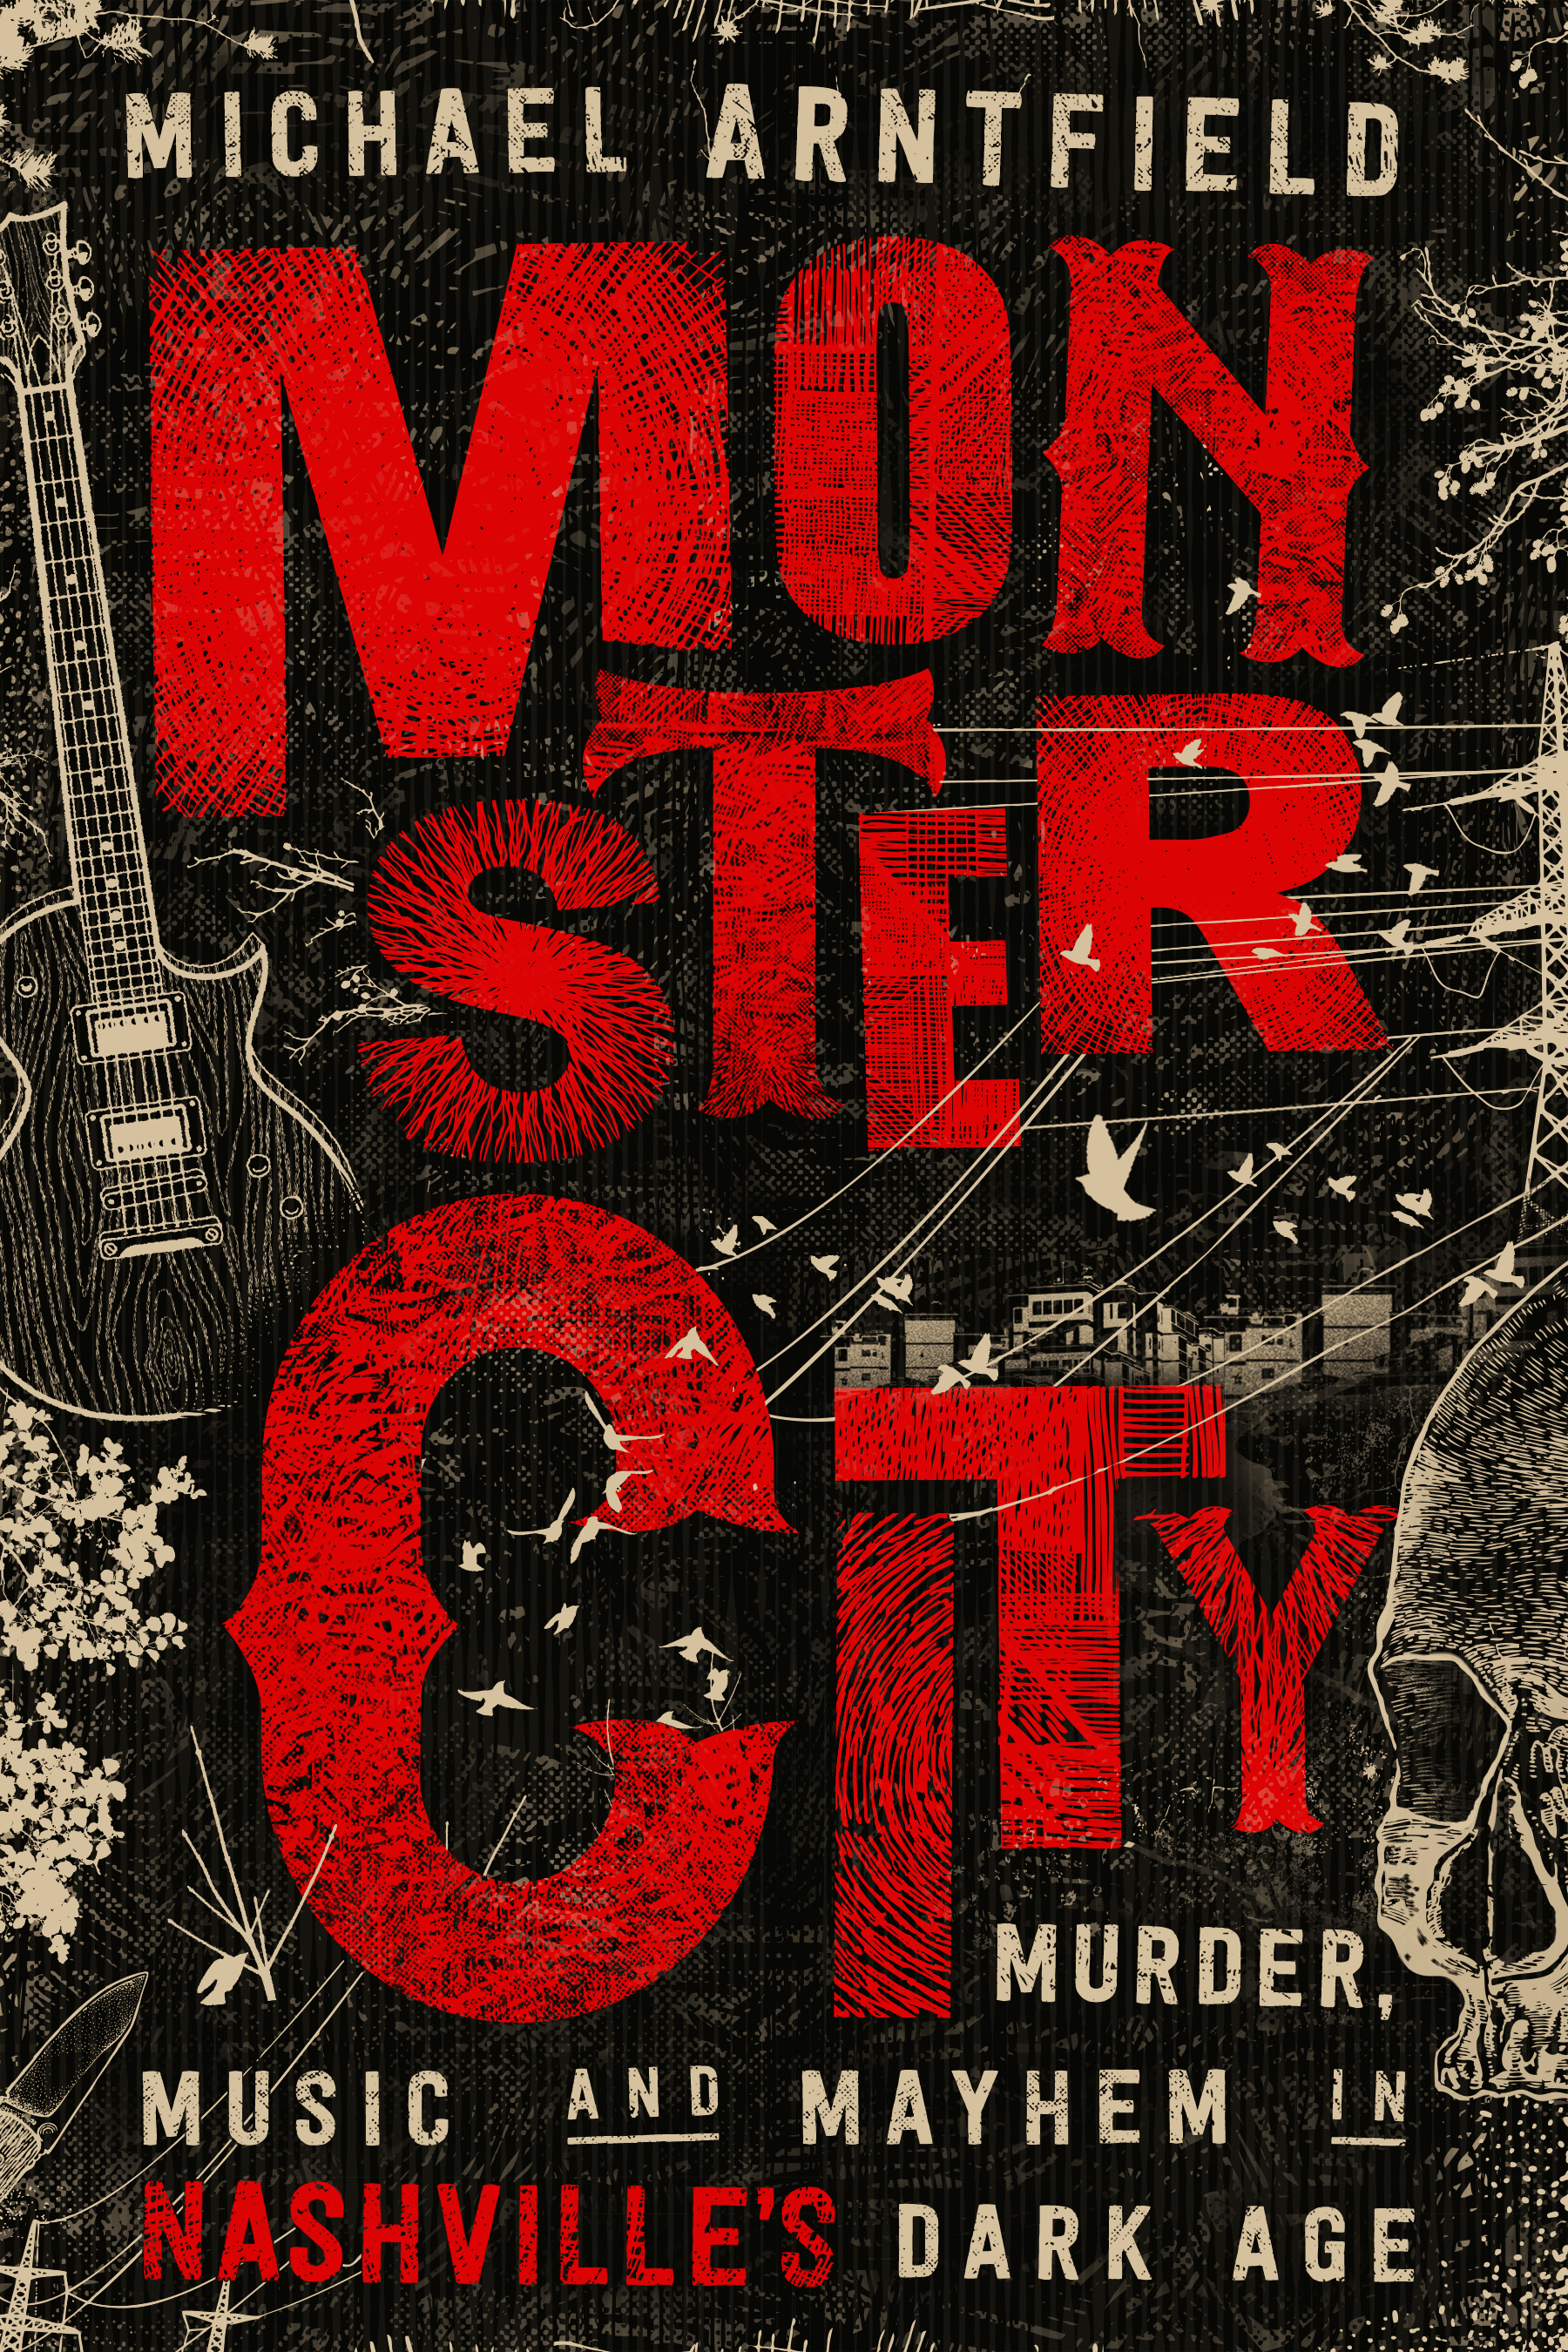 Arntfield-Monster City-24762-CV-FT-v4.jpg